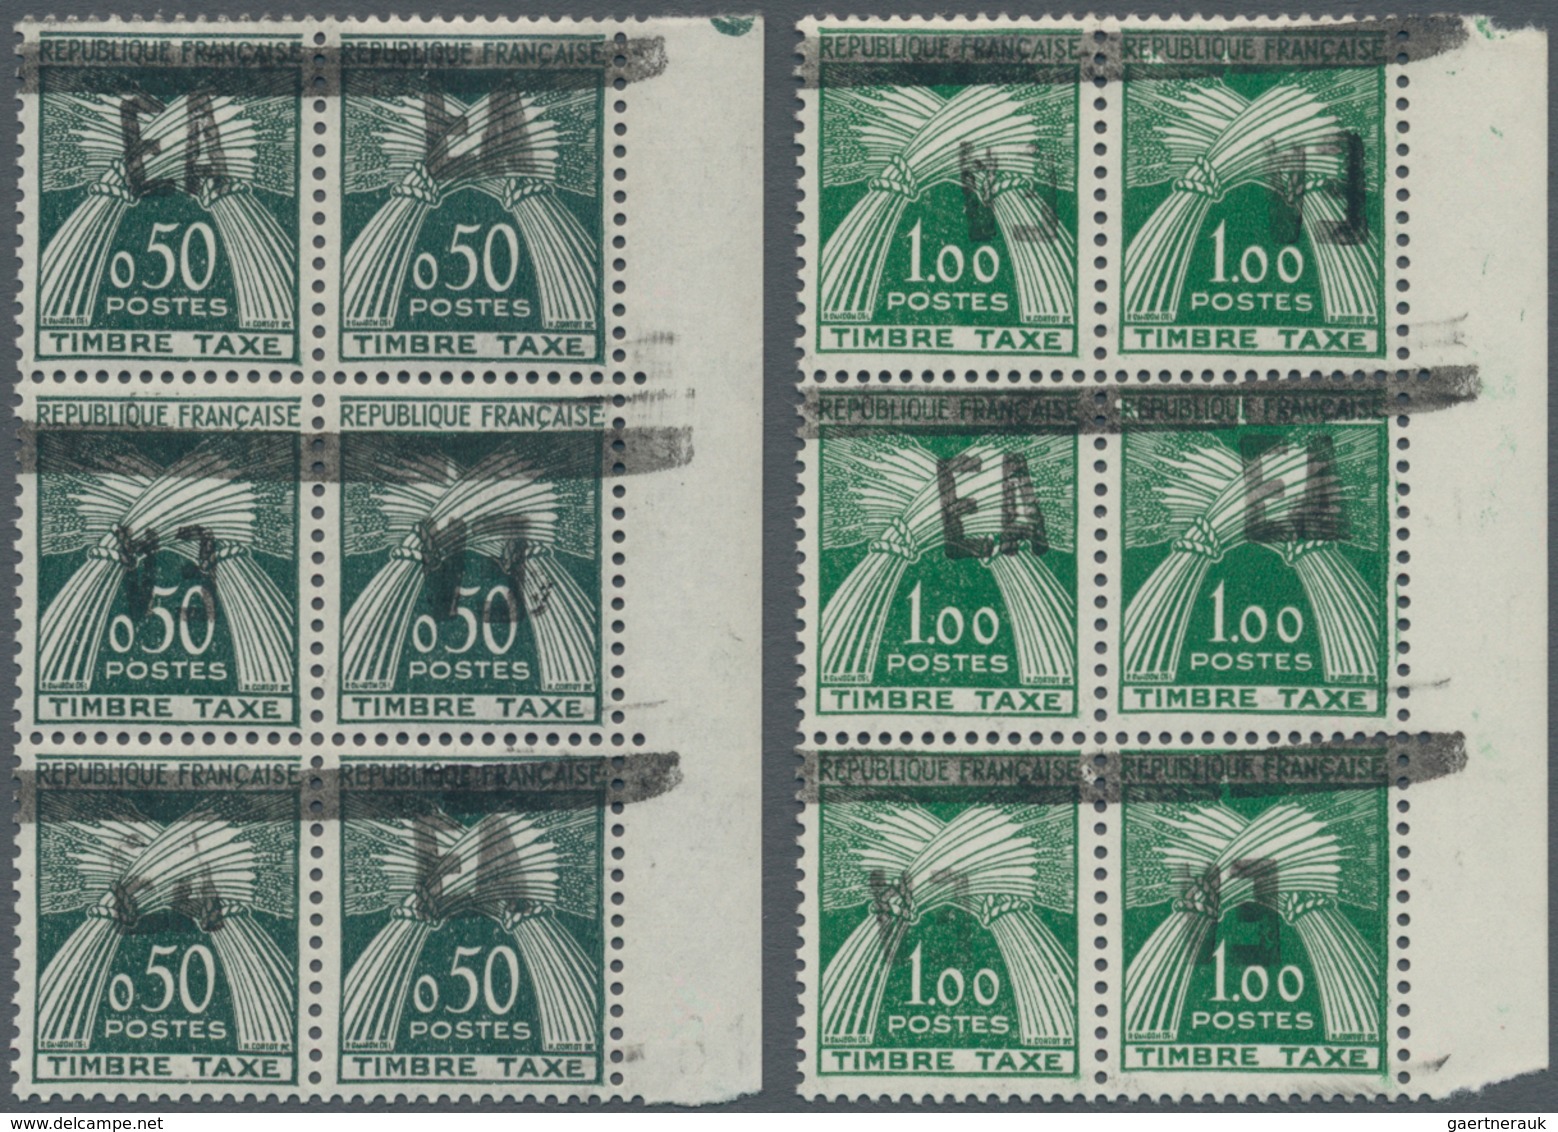 Algerien - Portomarken: 1962, Postage Due Stamps Of France With Hand-stamp Overprint "EA" And Bar Ov - Algerije (1962-...)